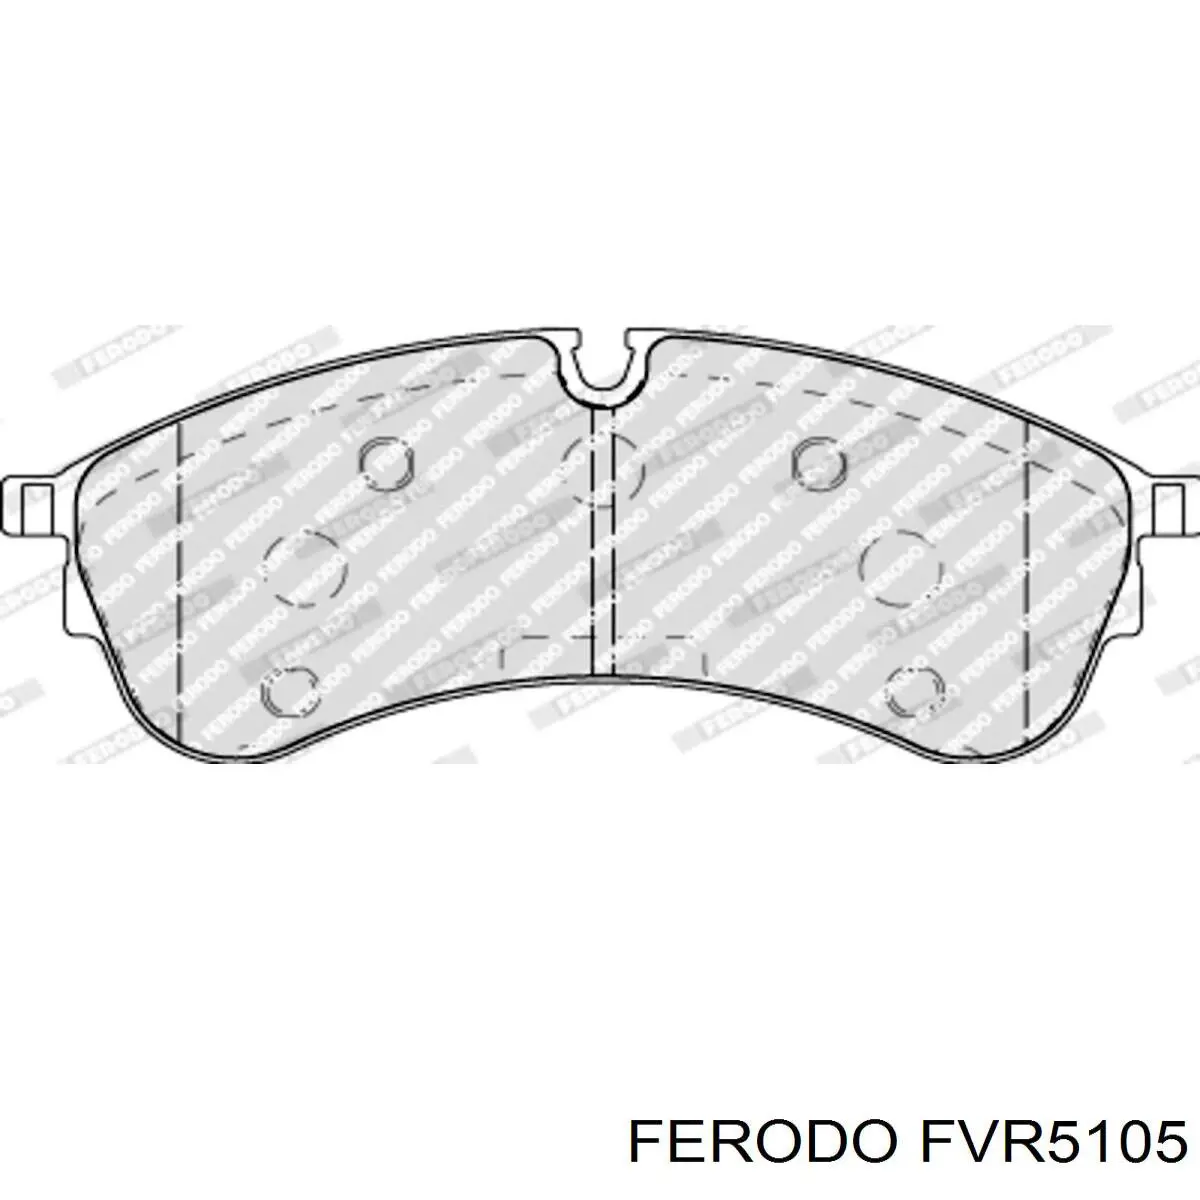 FVR5105 Ferodo передние тормозные колодки